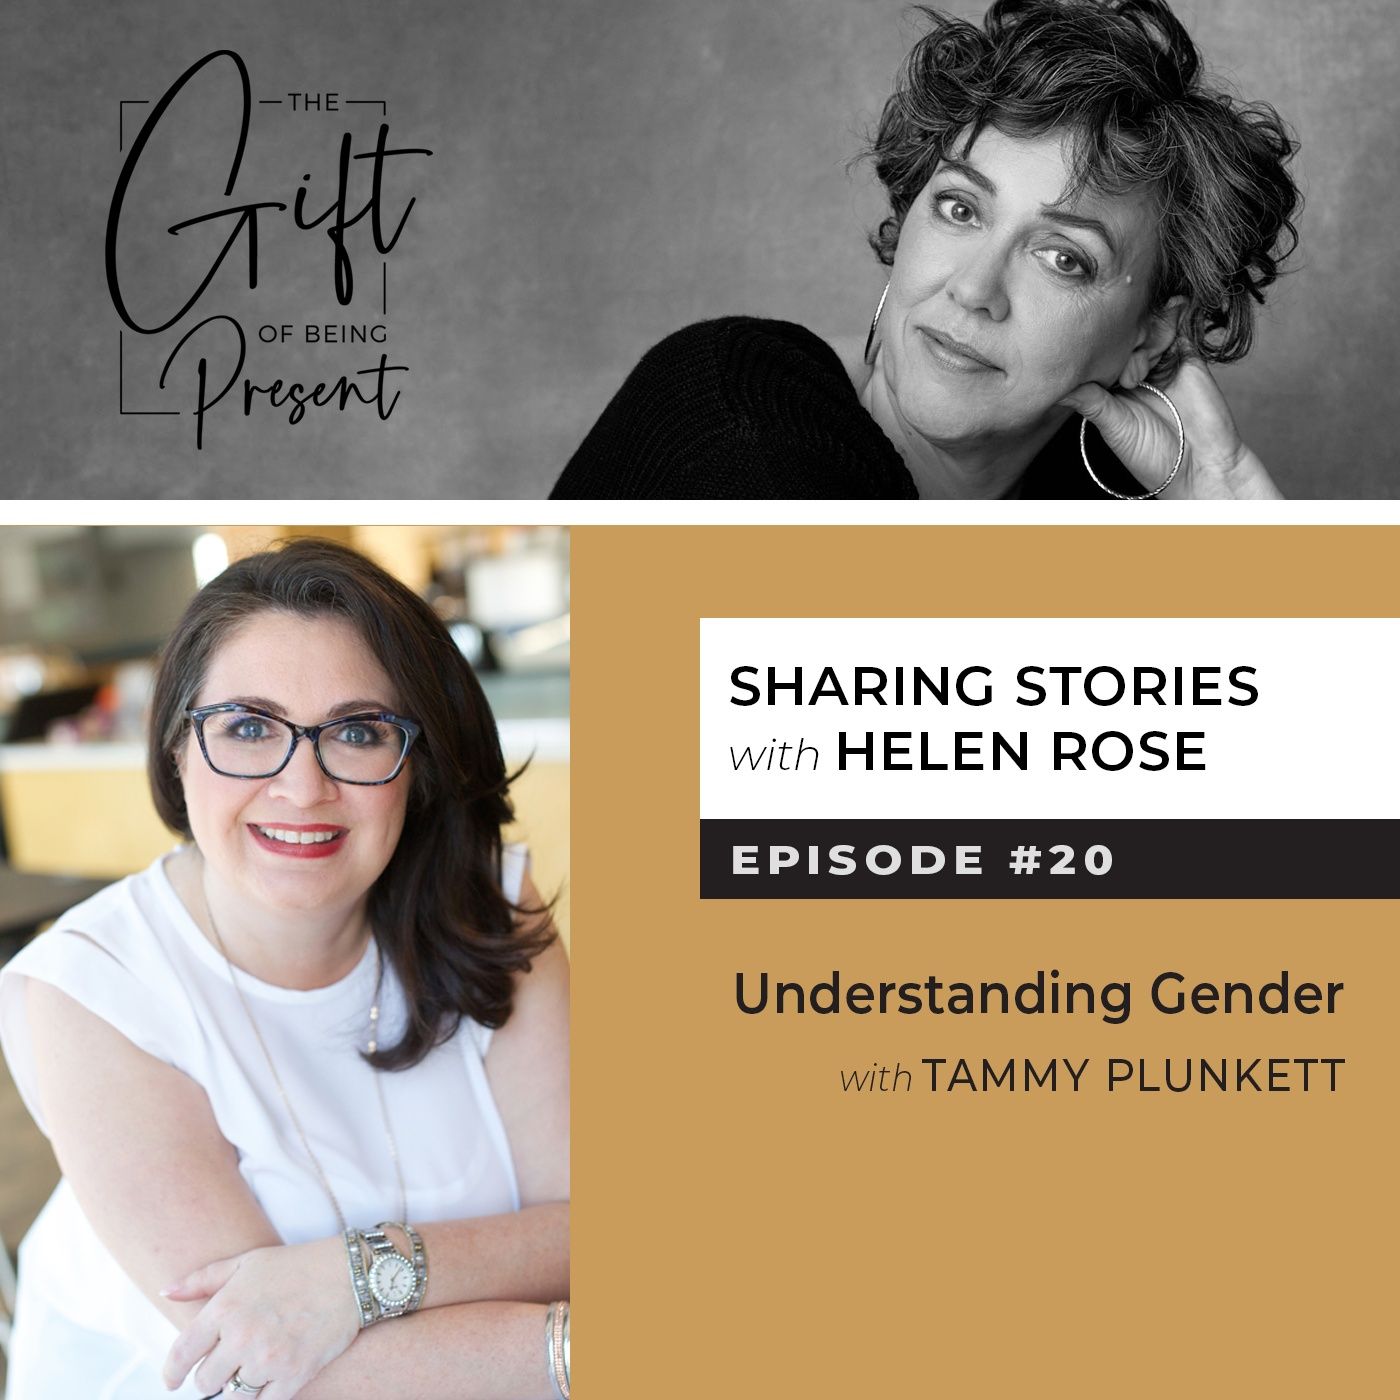 Understanding Gender with Tammy Plunkett